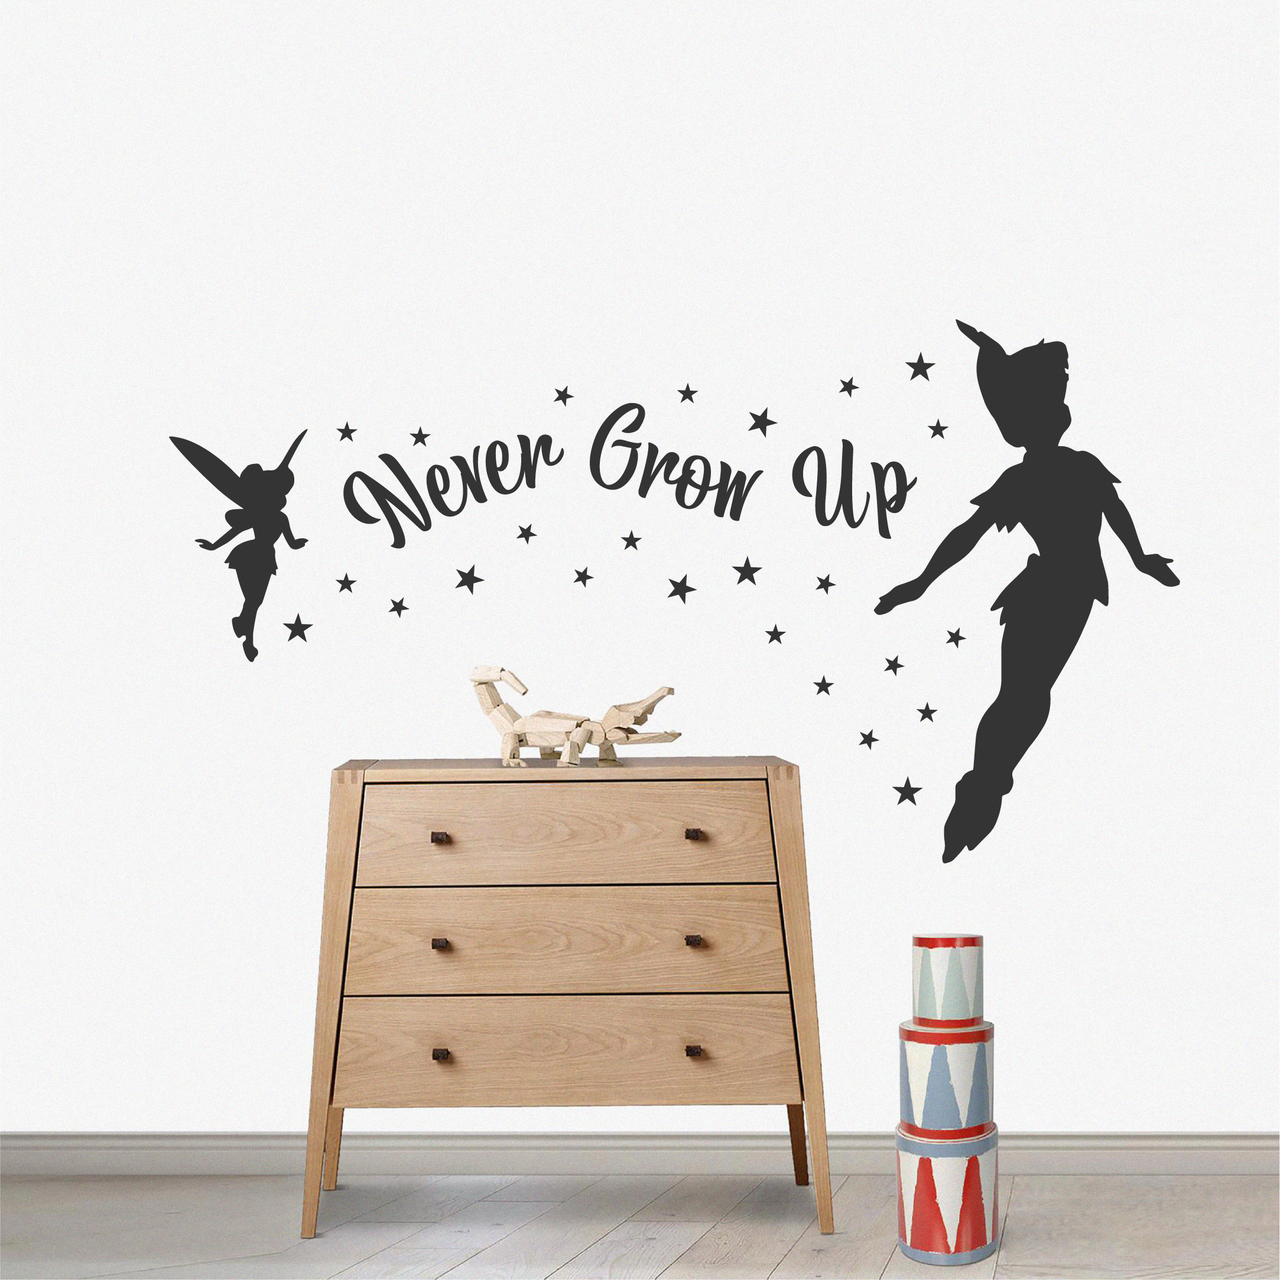 Never Grow Up - Peter Pan - Wall Decal